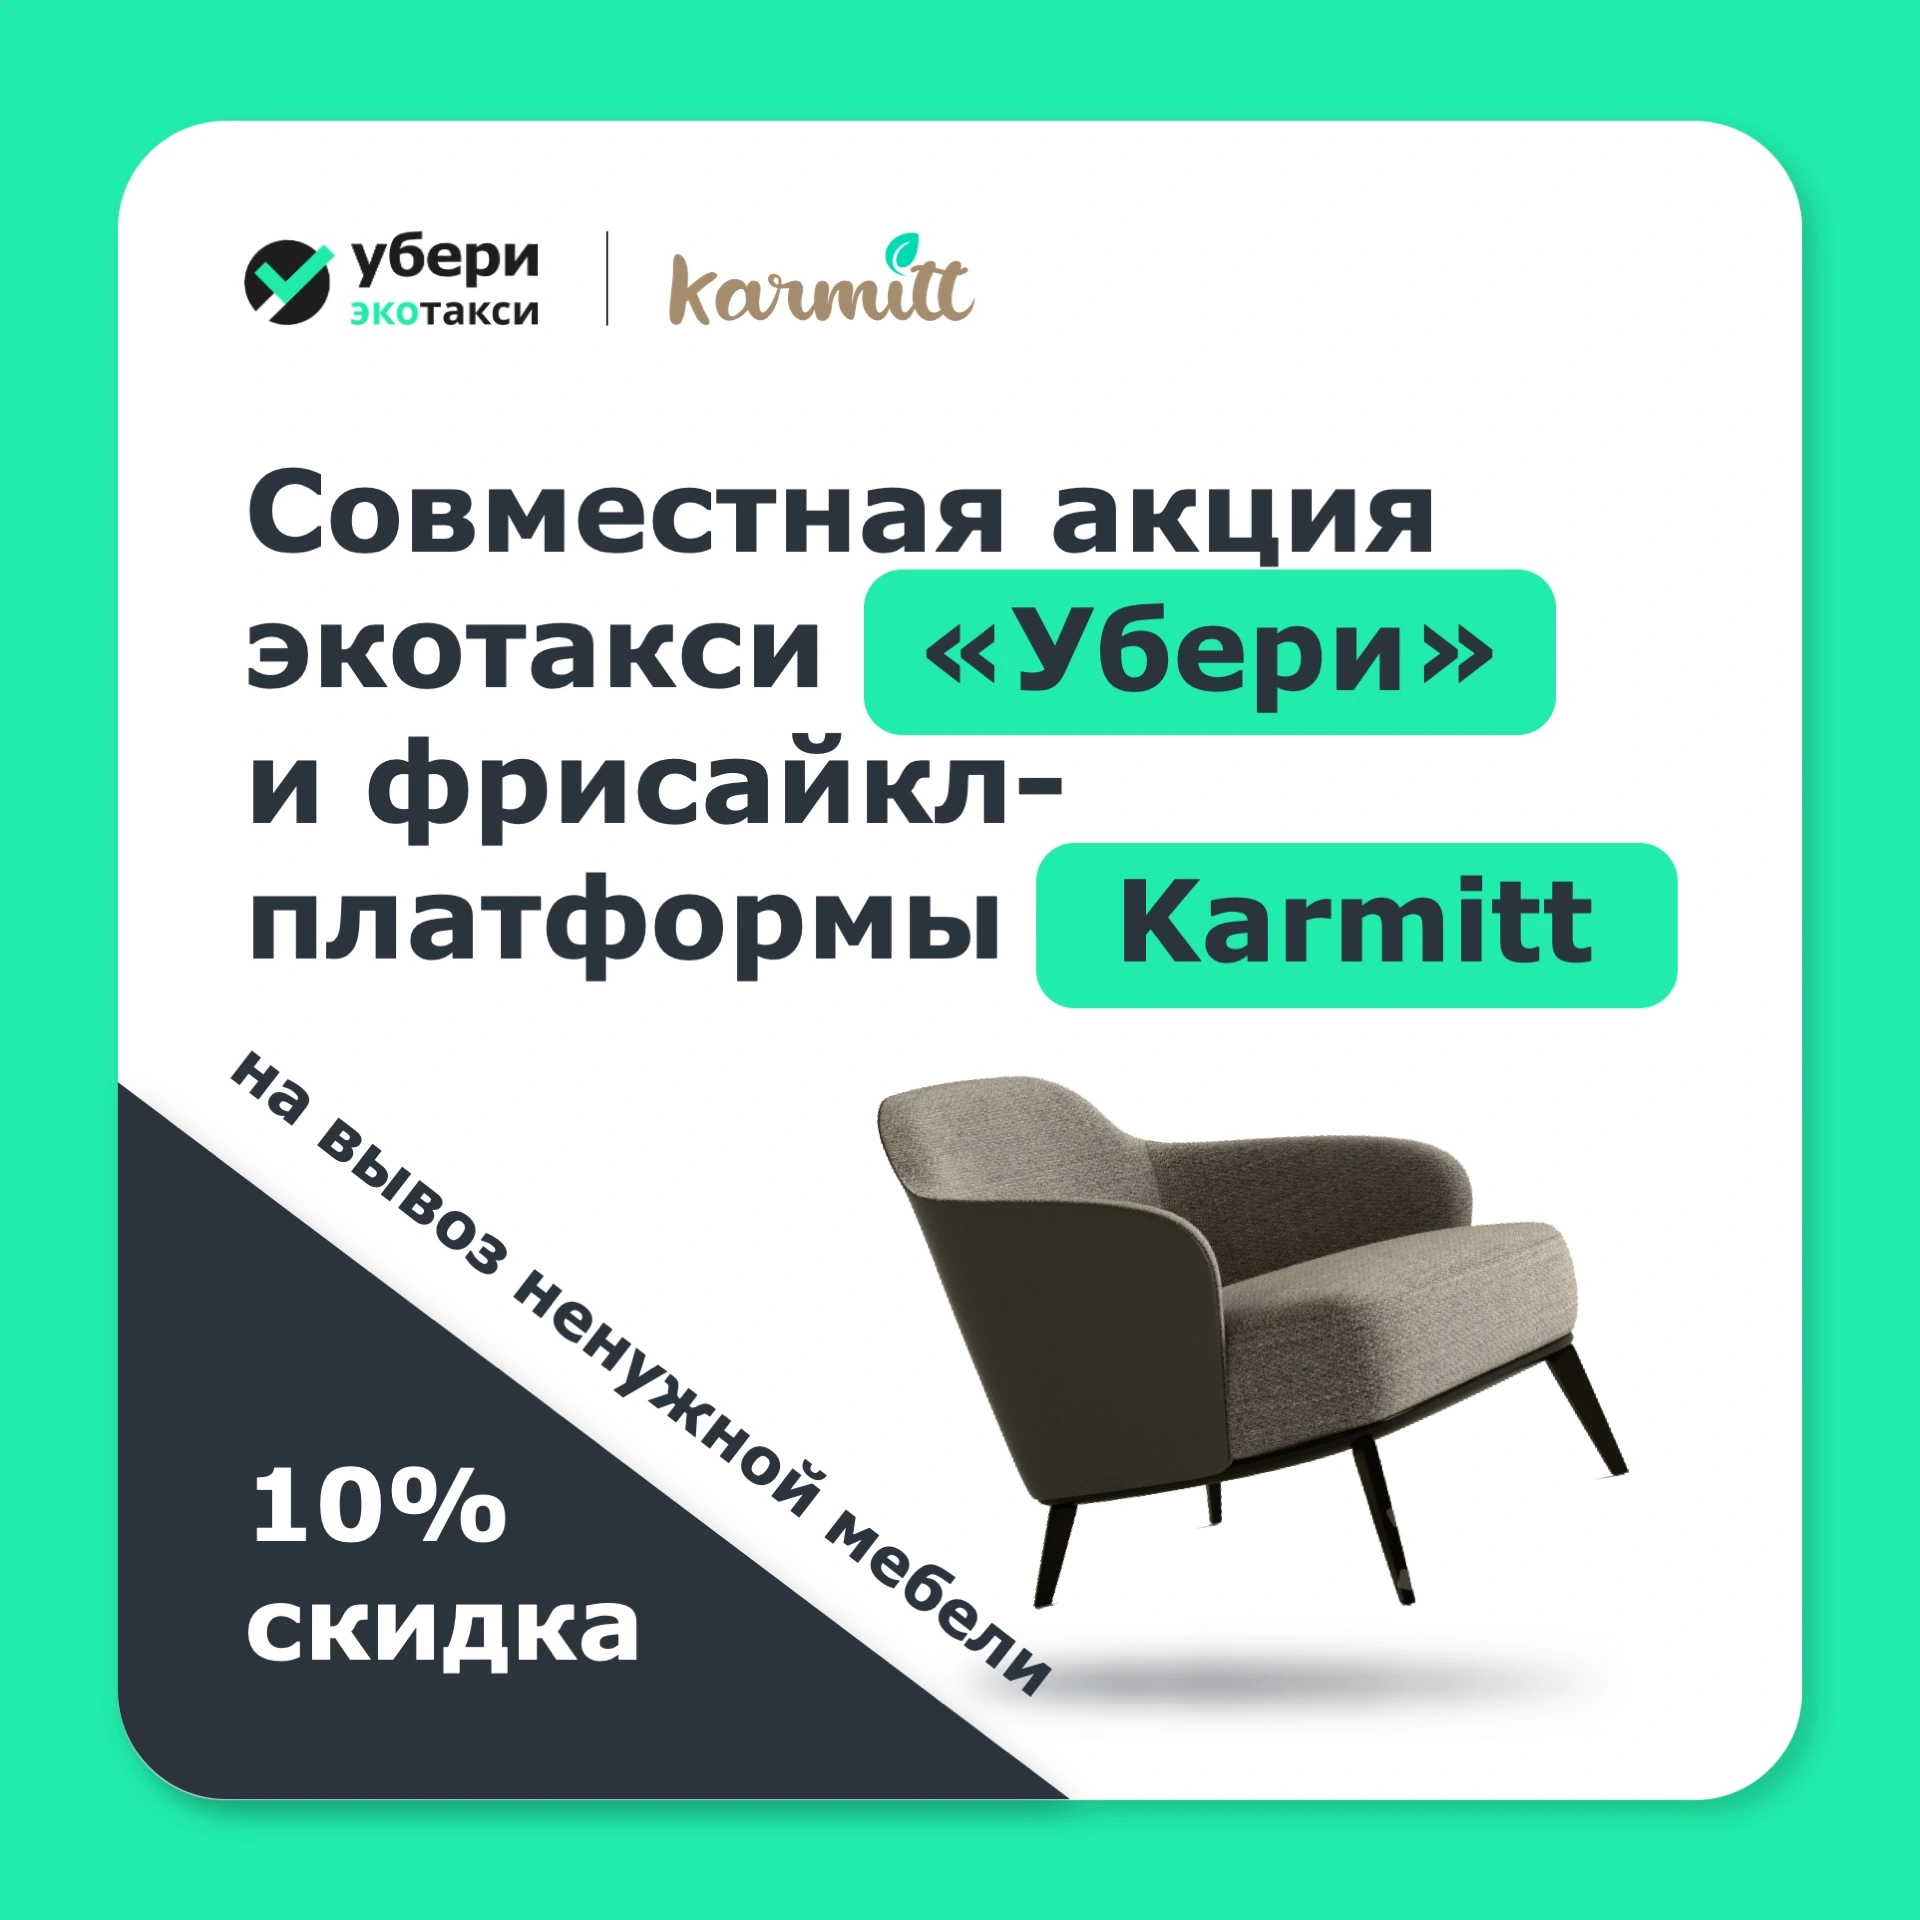 «Убери» и онлайн-платформа Karmitt вывоз вещей